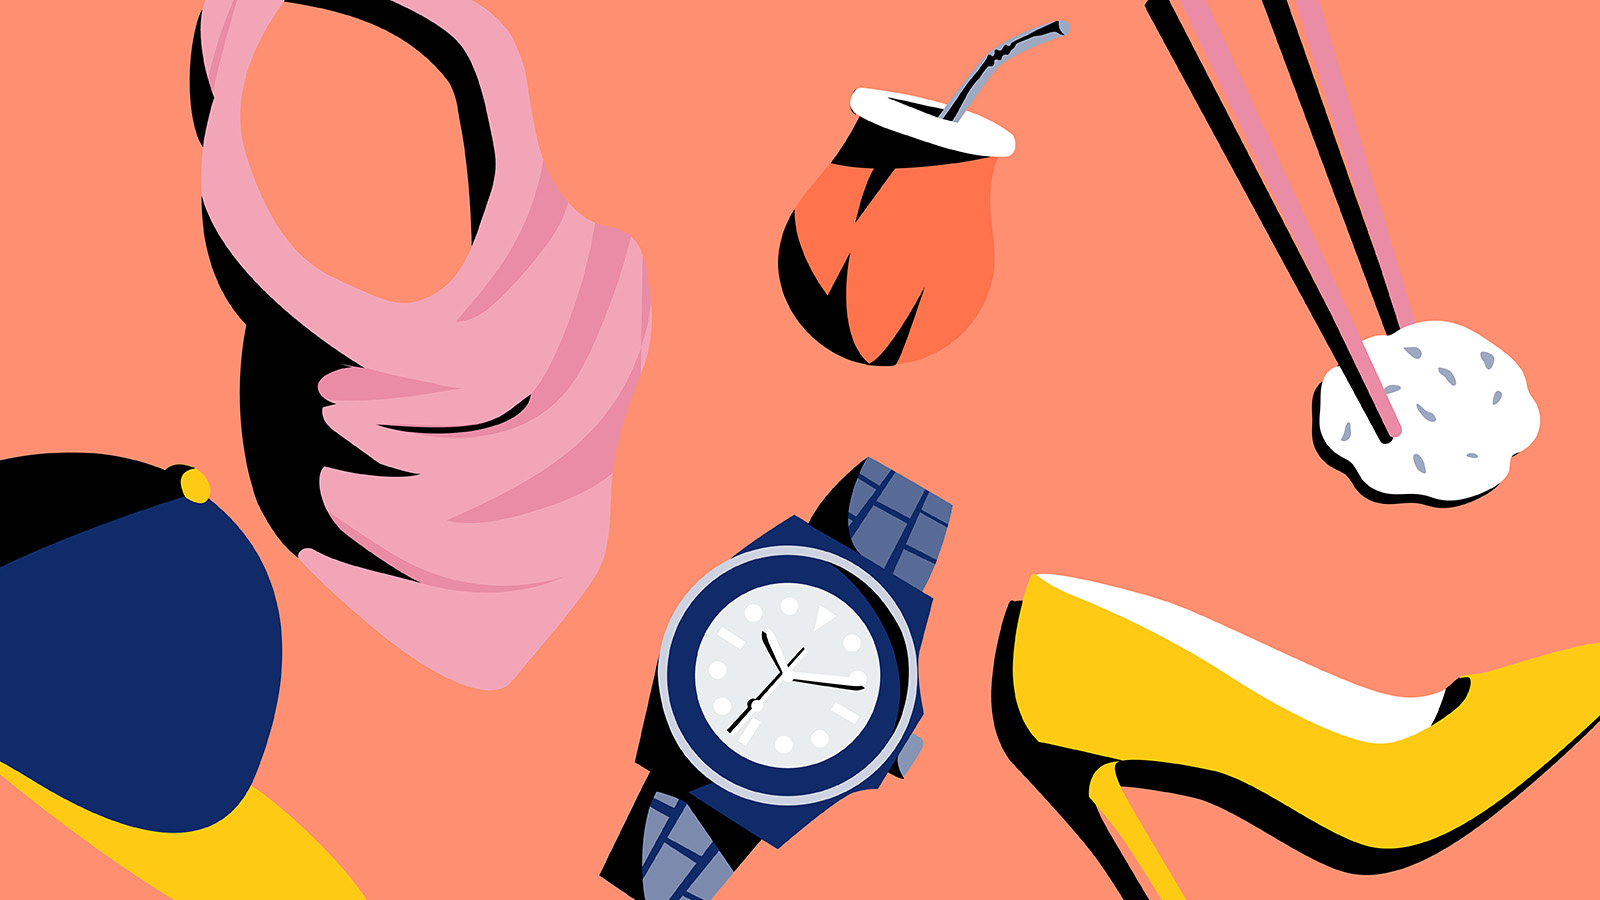 Illustration von Mütze, Kopftuch, Armbanduhr, Trinkbehälter, High Heel und Sushistäbchen als Symbolbild für Diversität und Inklusion auf dem Arbeitsmarkt, über das Raúl Krauthausen im Interview erzählt.